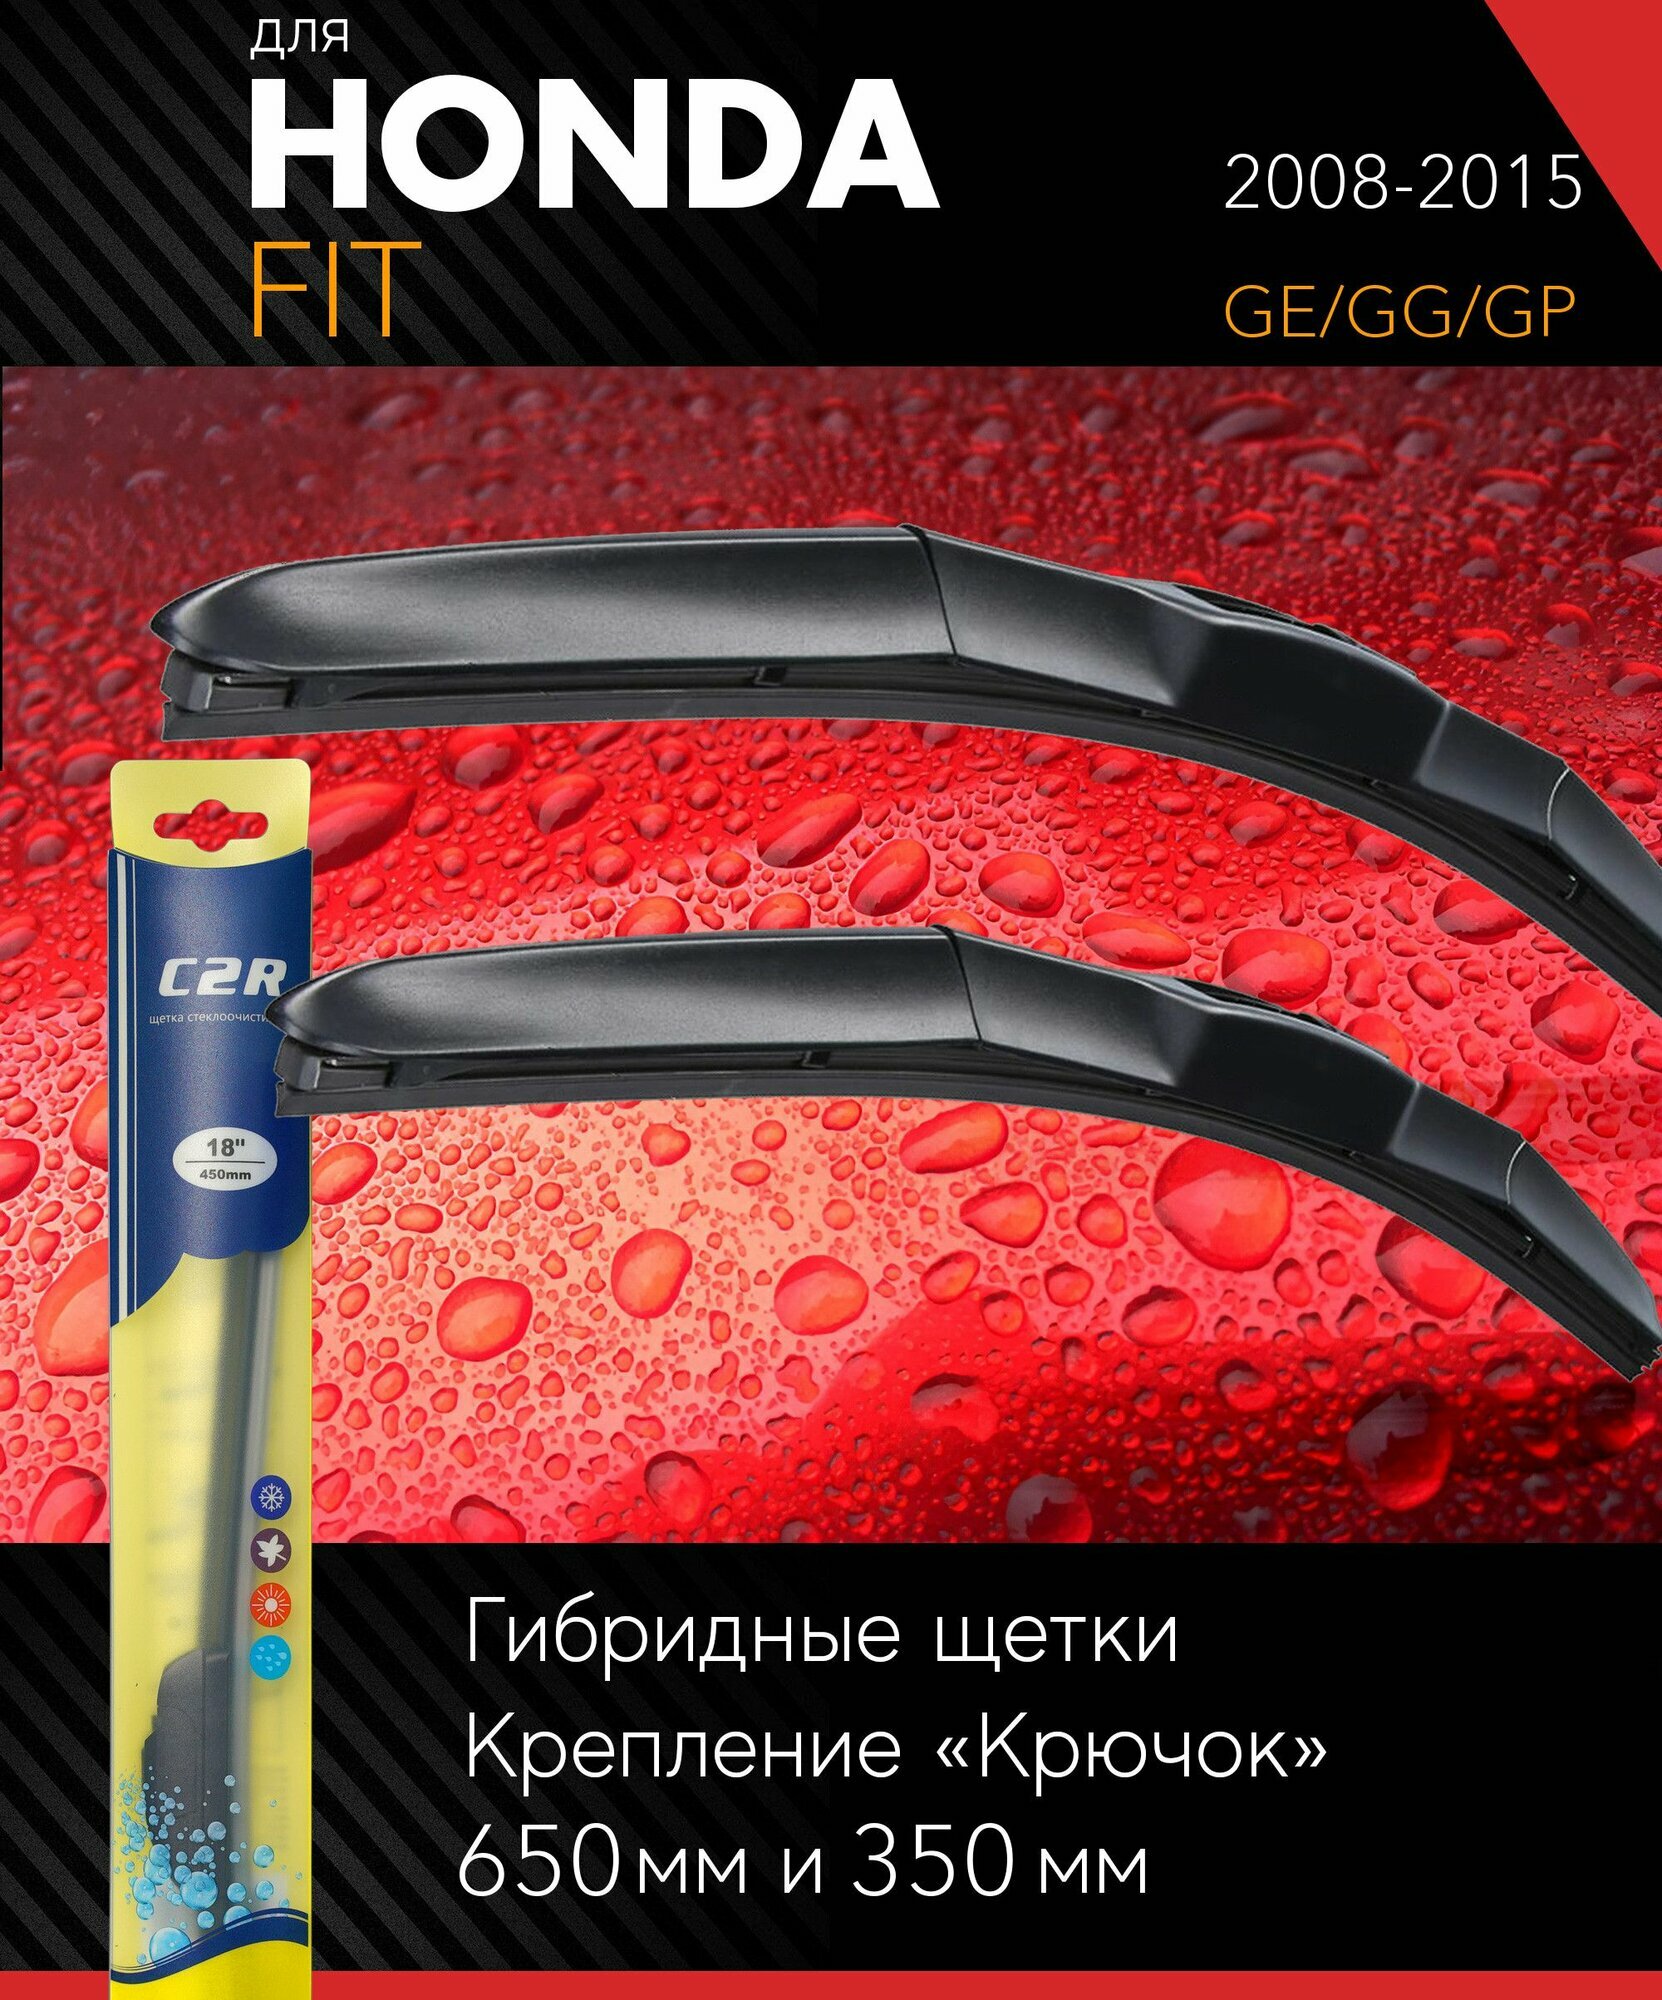 2 щетки стеклоочистителя 650 350 мм на Хонда Фит 2008-2015 гибридные дворники комплект для Honda Fit (GE/GG/GP) - C2R